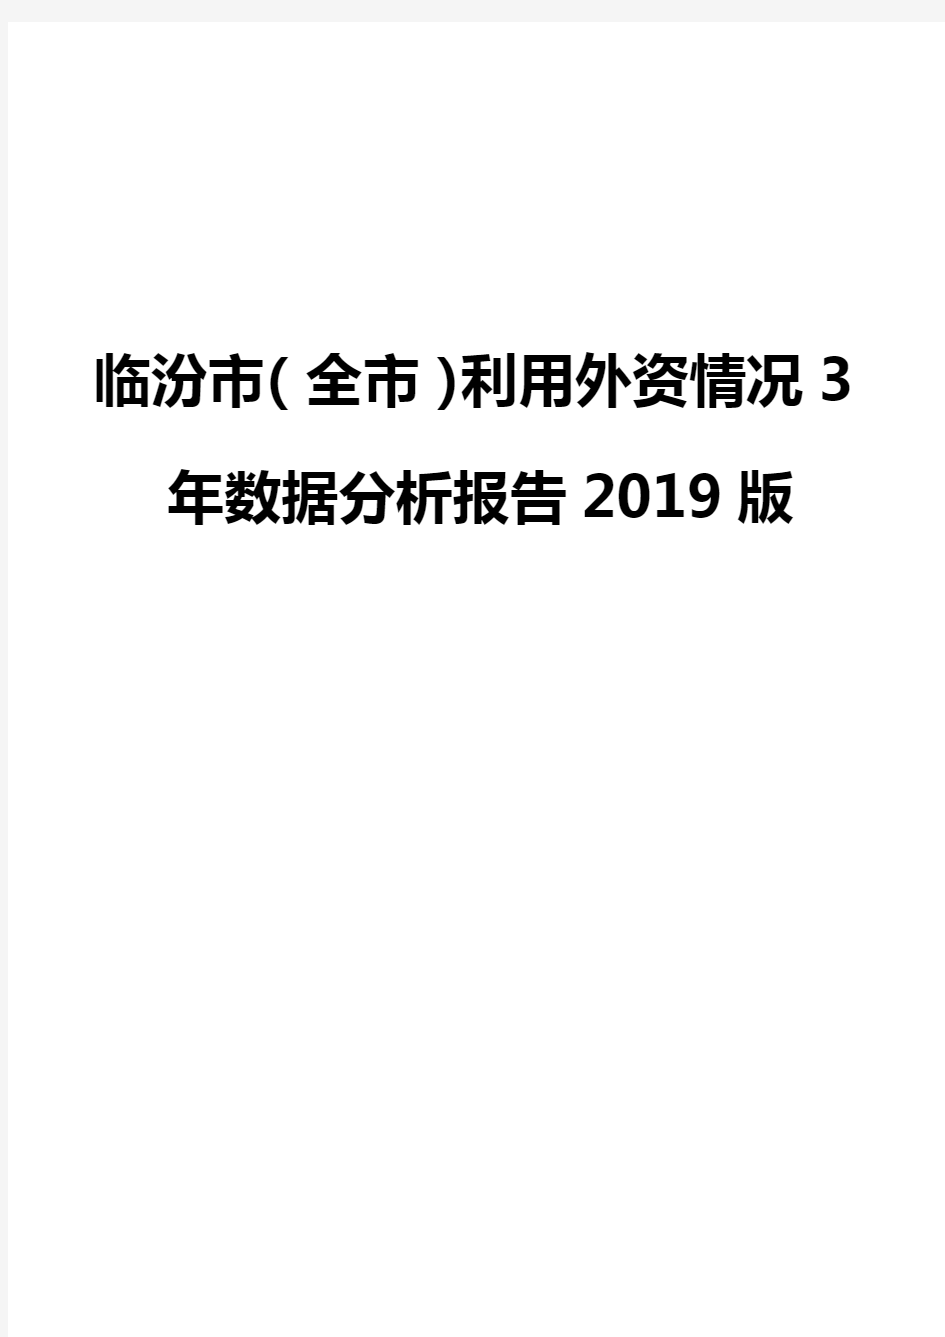 临汾市(全市)利用外资情况3年数据分析报告2019版